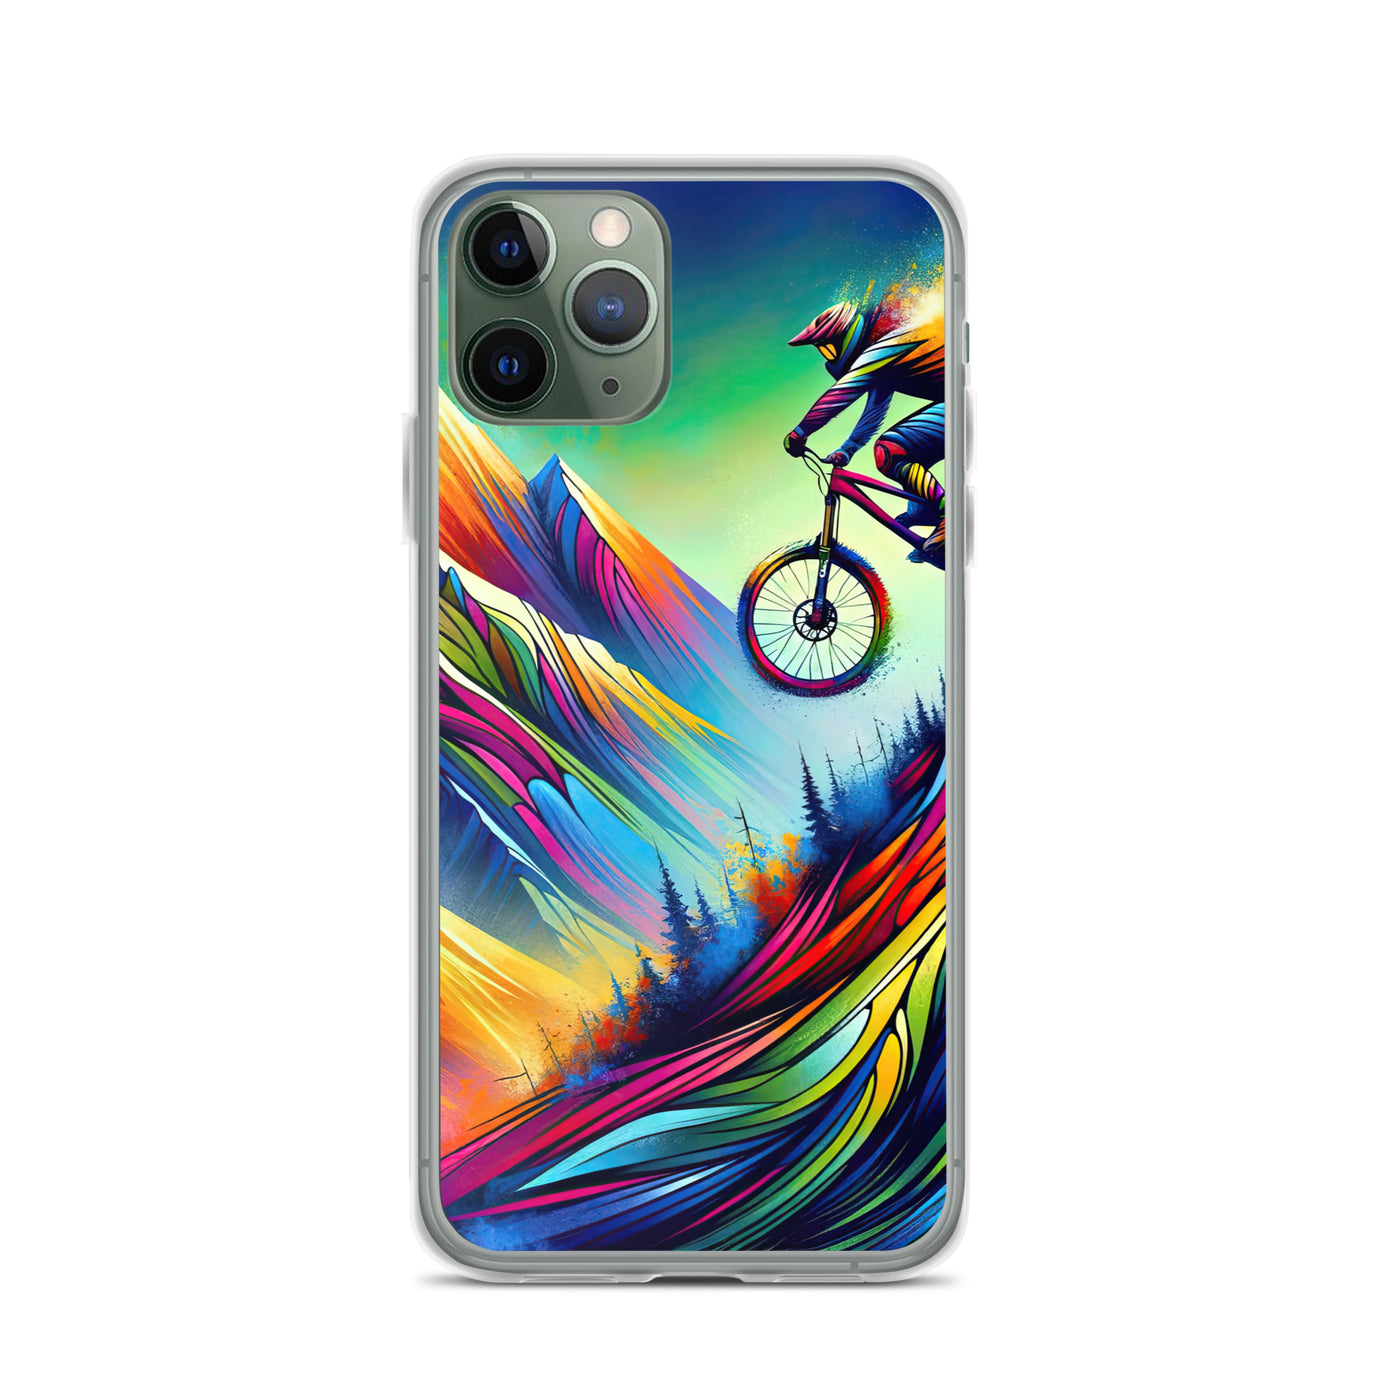 Mountainbiker in farbenfroher Alpenkulisse mit abstraktem Touch (M) - iPhone Schutzhülle (durchsichtig) xxx yyy zzz iPhone 11 Pro